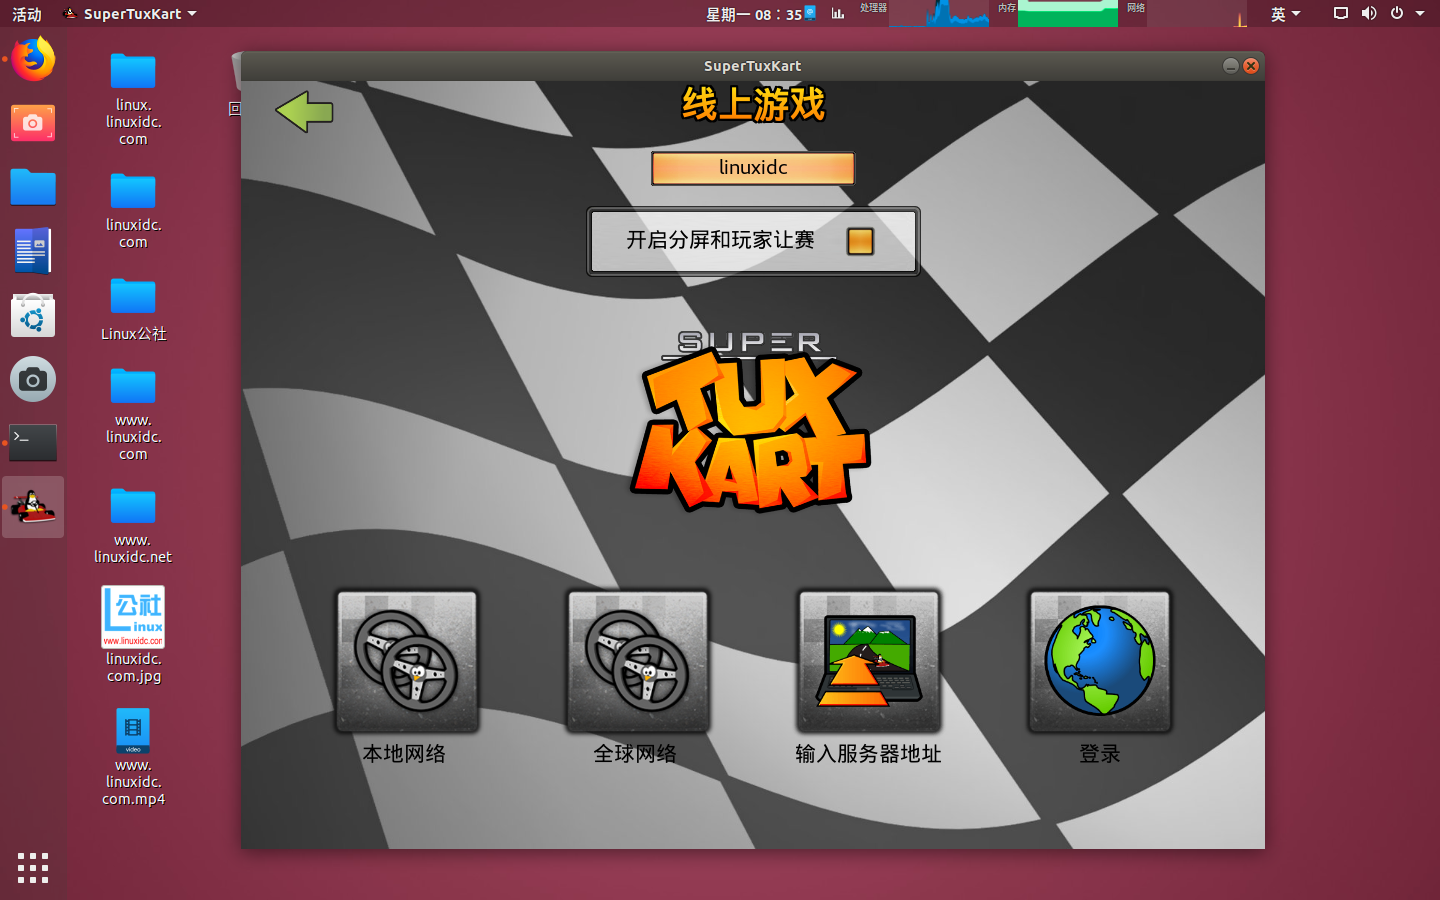 Linux赛车游戏 SuperTuxKart 1.0 正式发布Linux赛车游戏 SuperTuxKart 1.0 正式发布